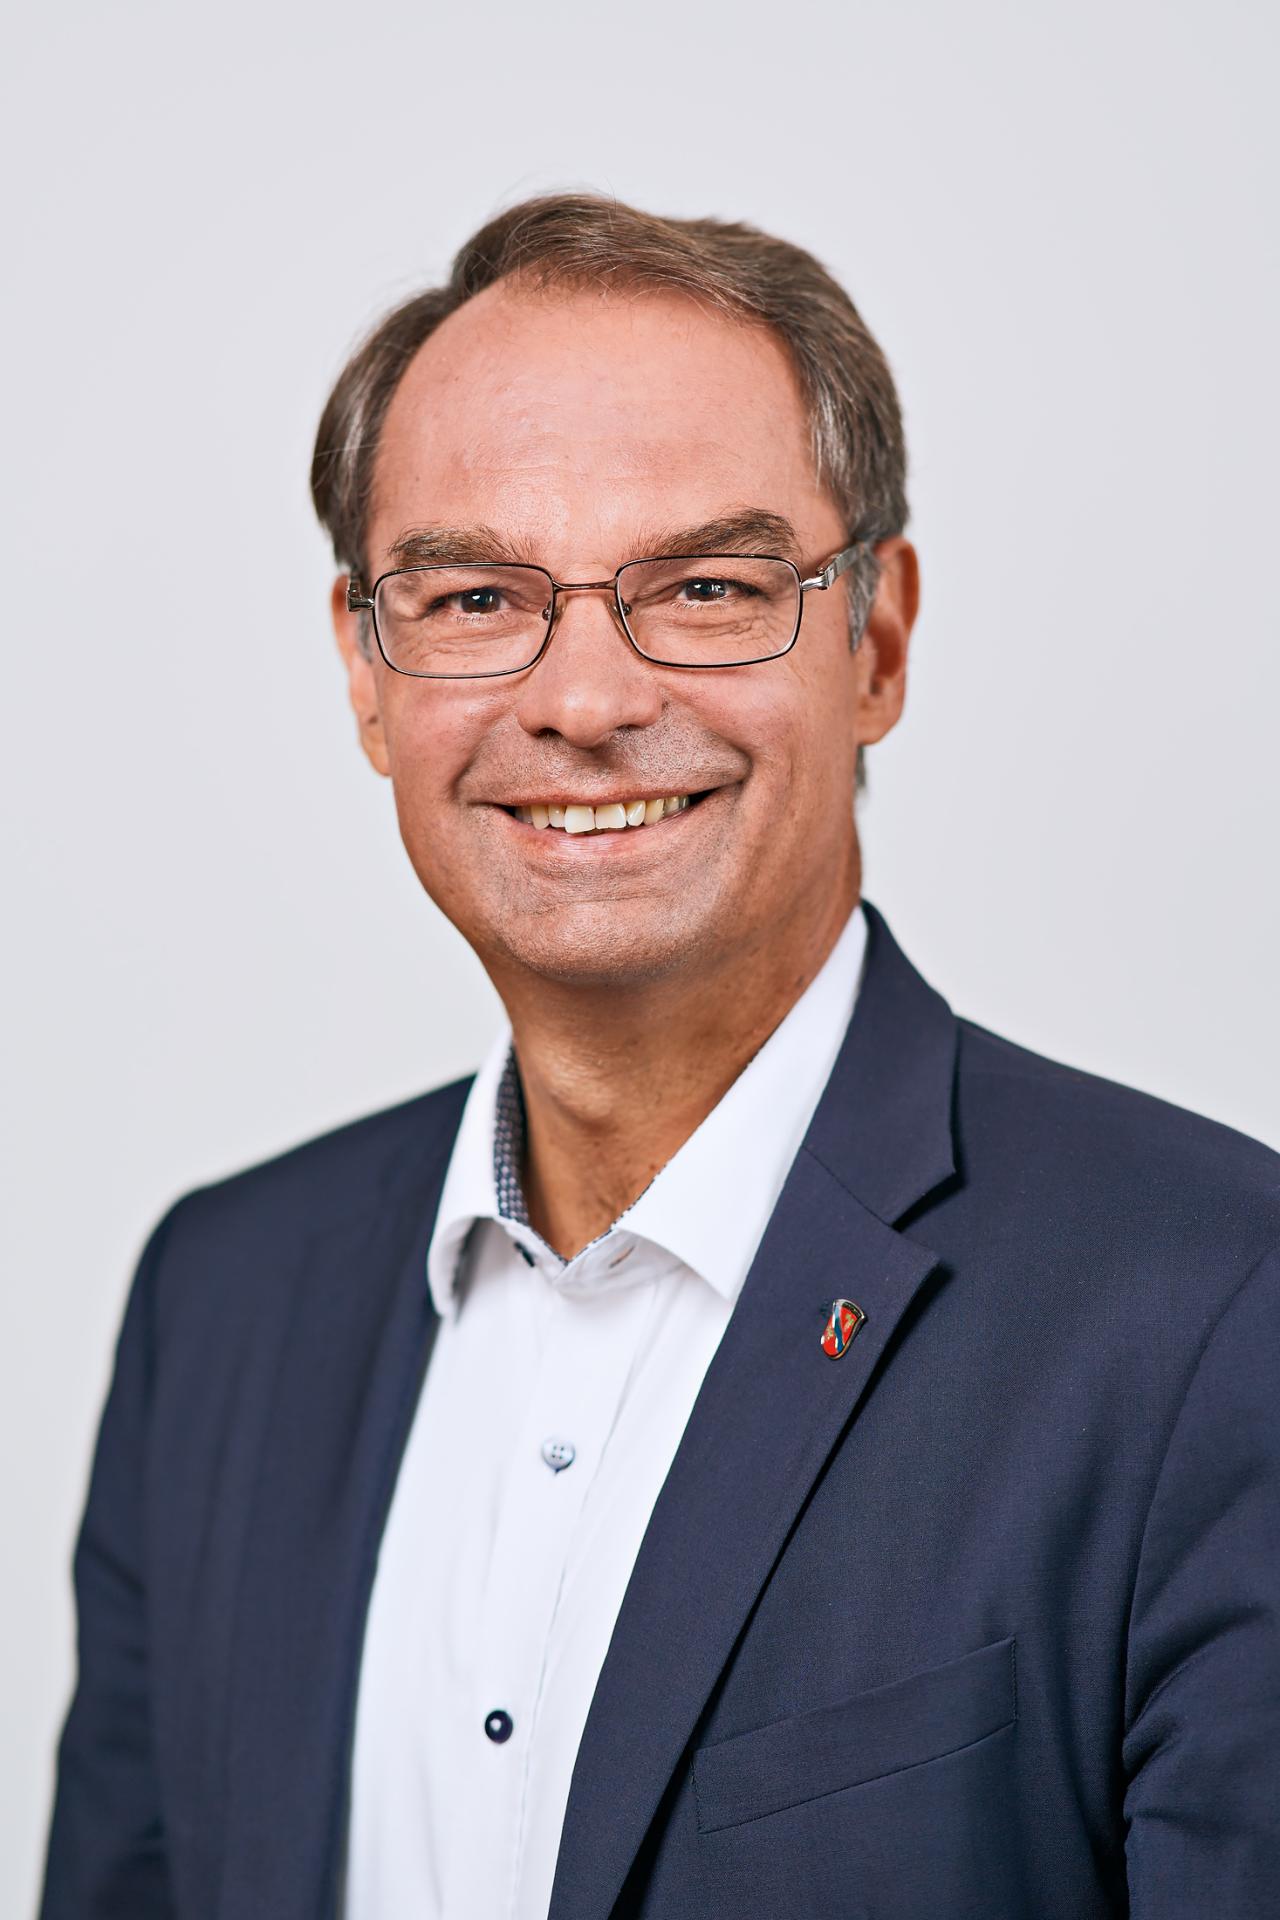 Herr Dr. Dieter Lang, Bürgermeister der Stadt Dietzenbach